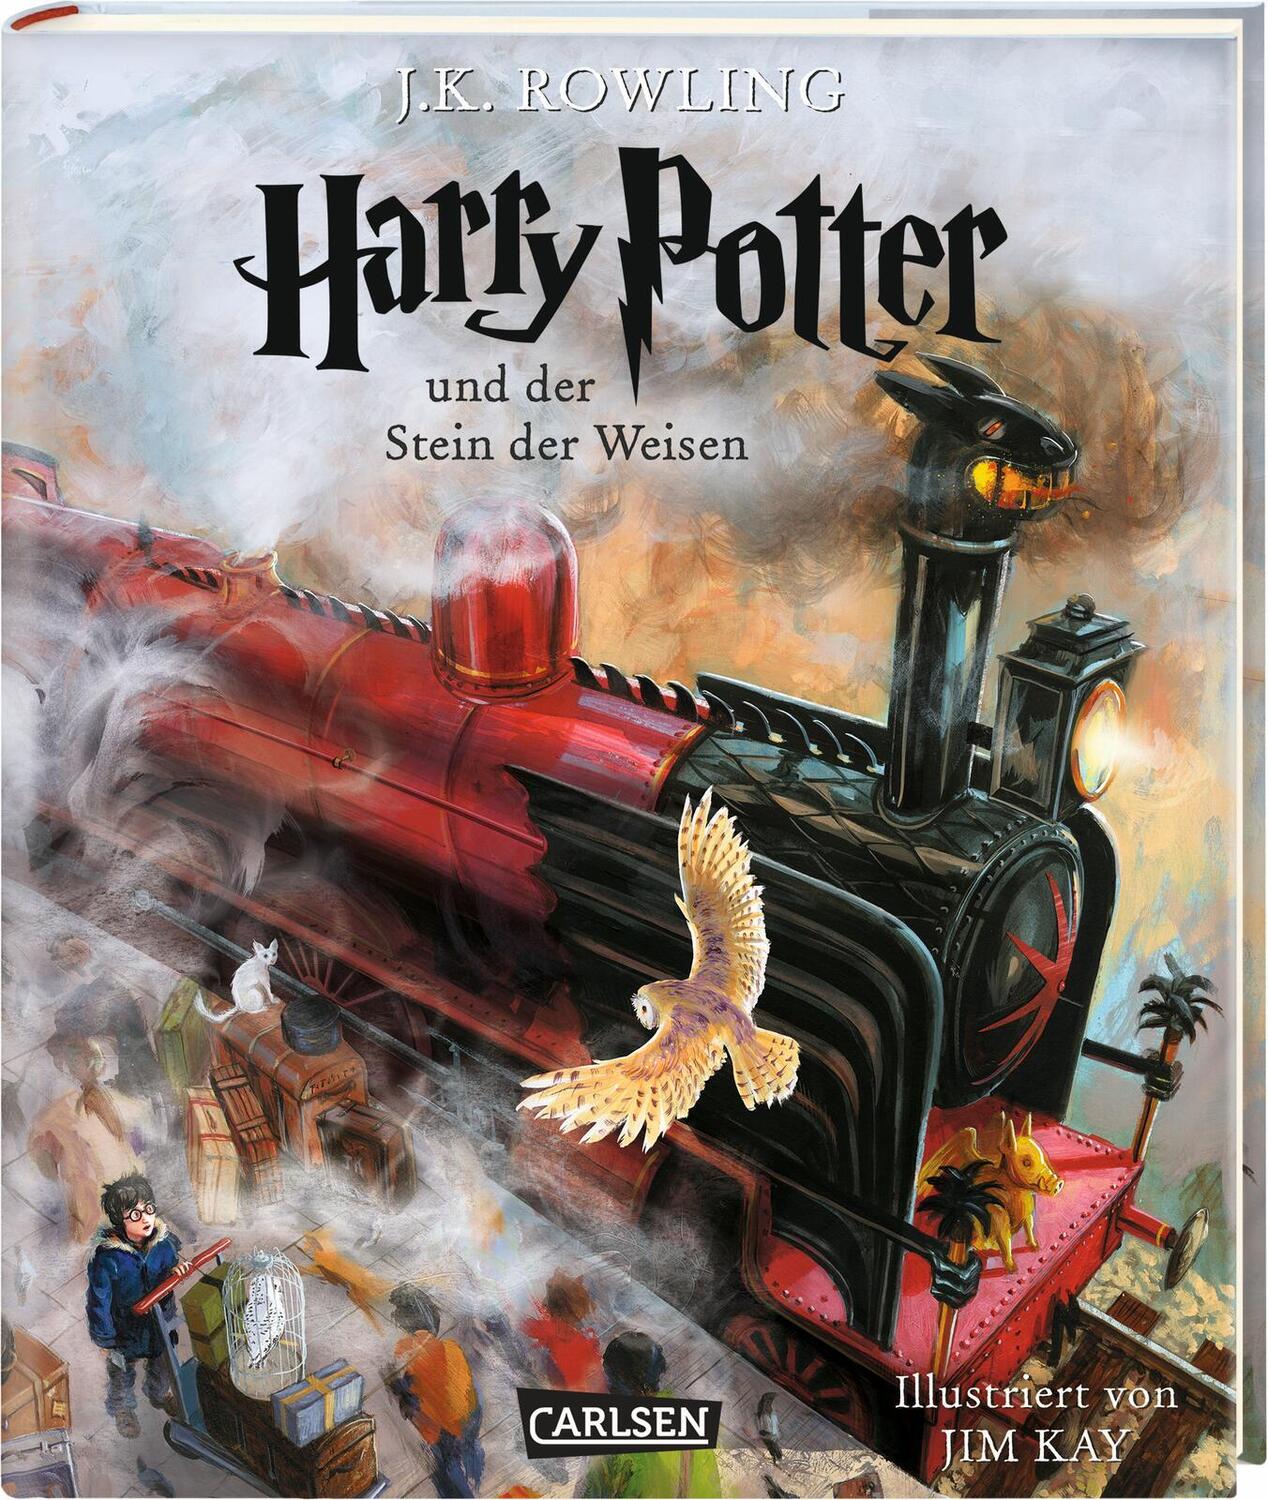 Harry Potter 1 und der Stein der Weisen. Schmuckausgabe - Rowling, Joanne K.